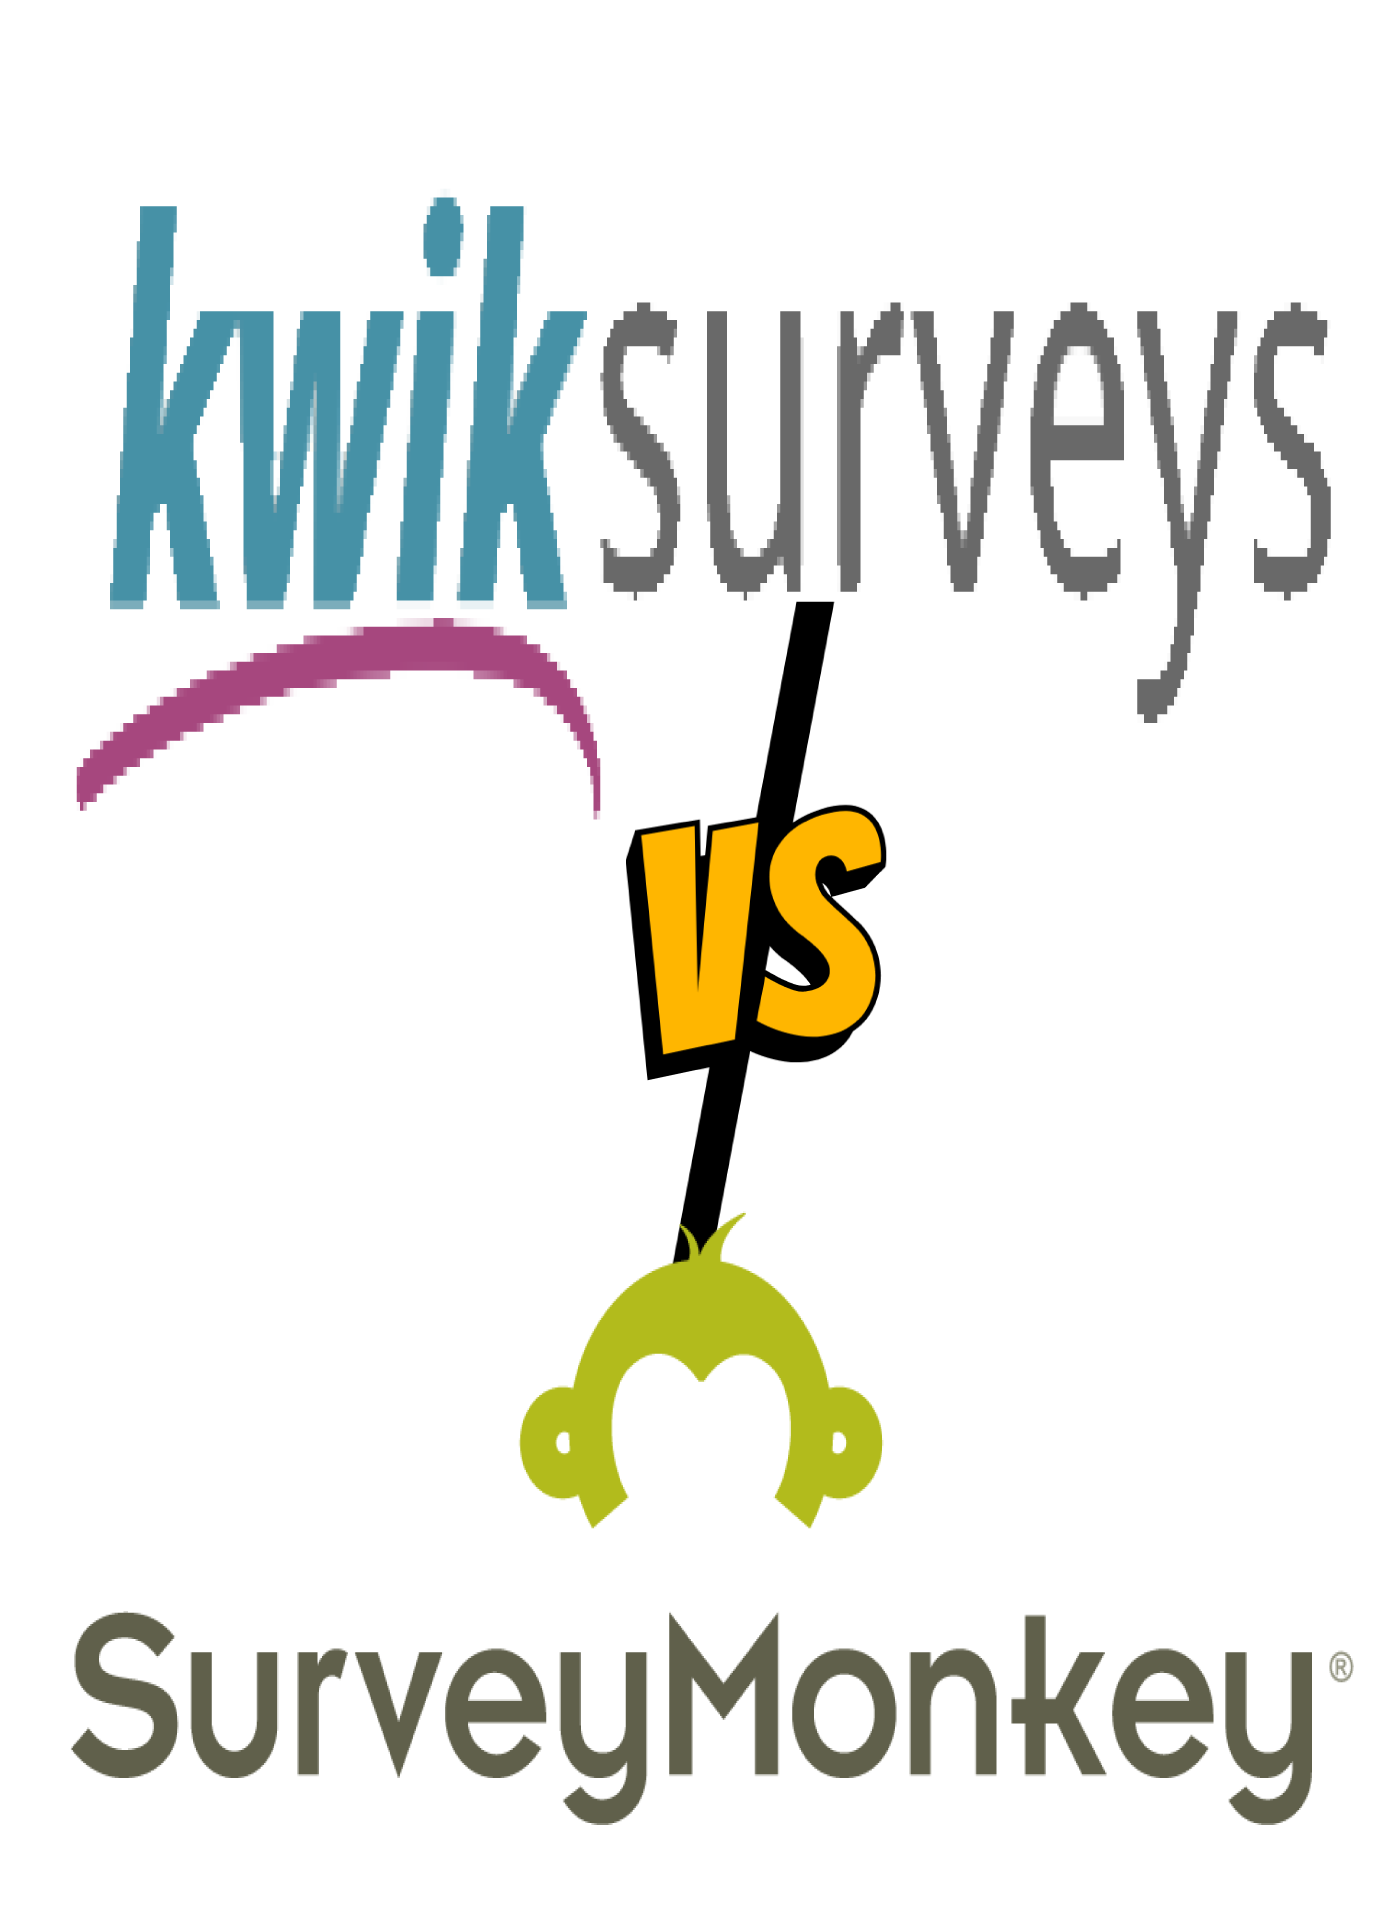 salesforce surveys vs surveymonkey, surveymonkey surveys, google surveys vs surveymonkey, kwik surveys vs surveymonkey, snap surveys vs surveymonkey